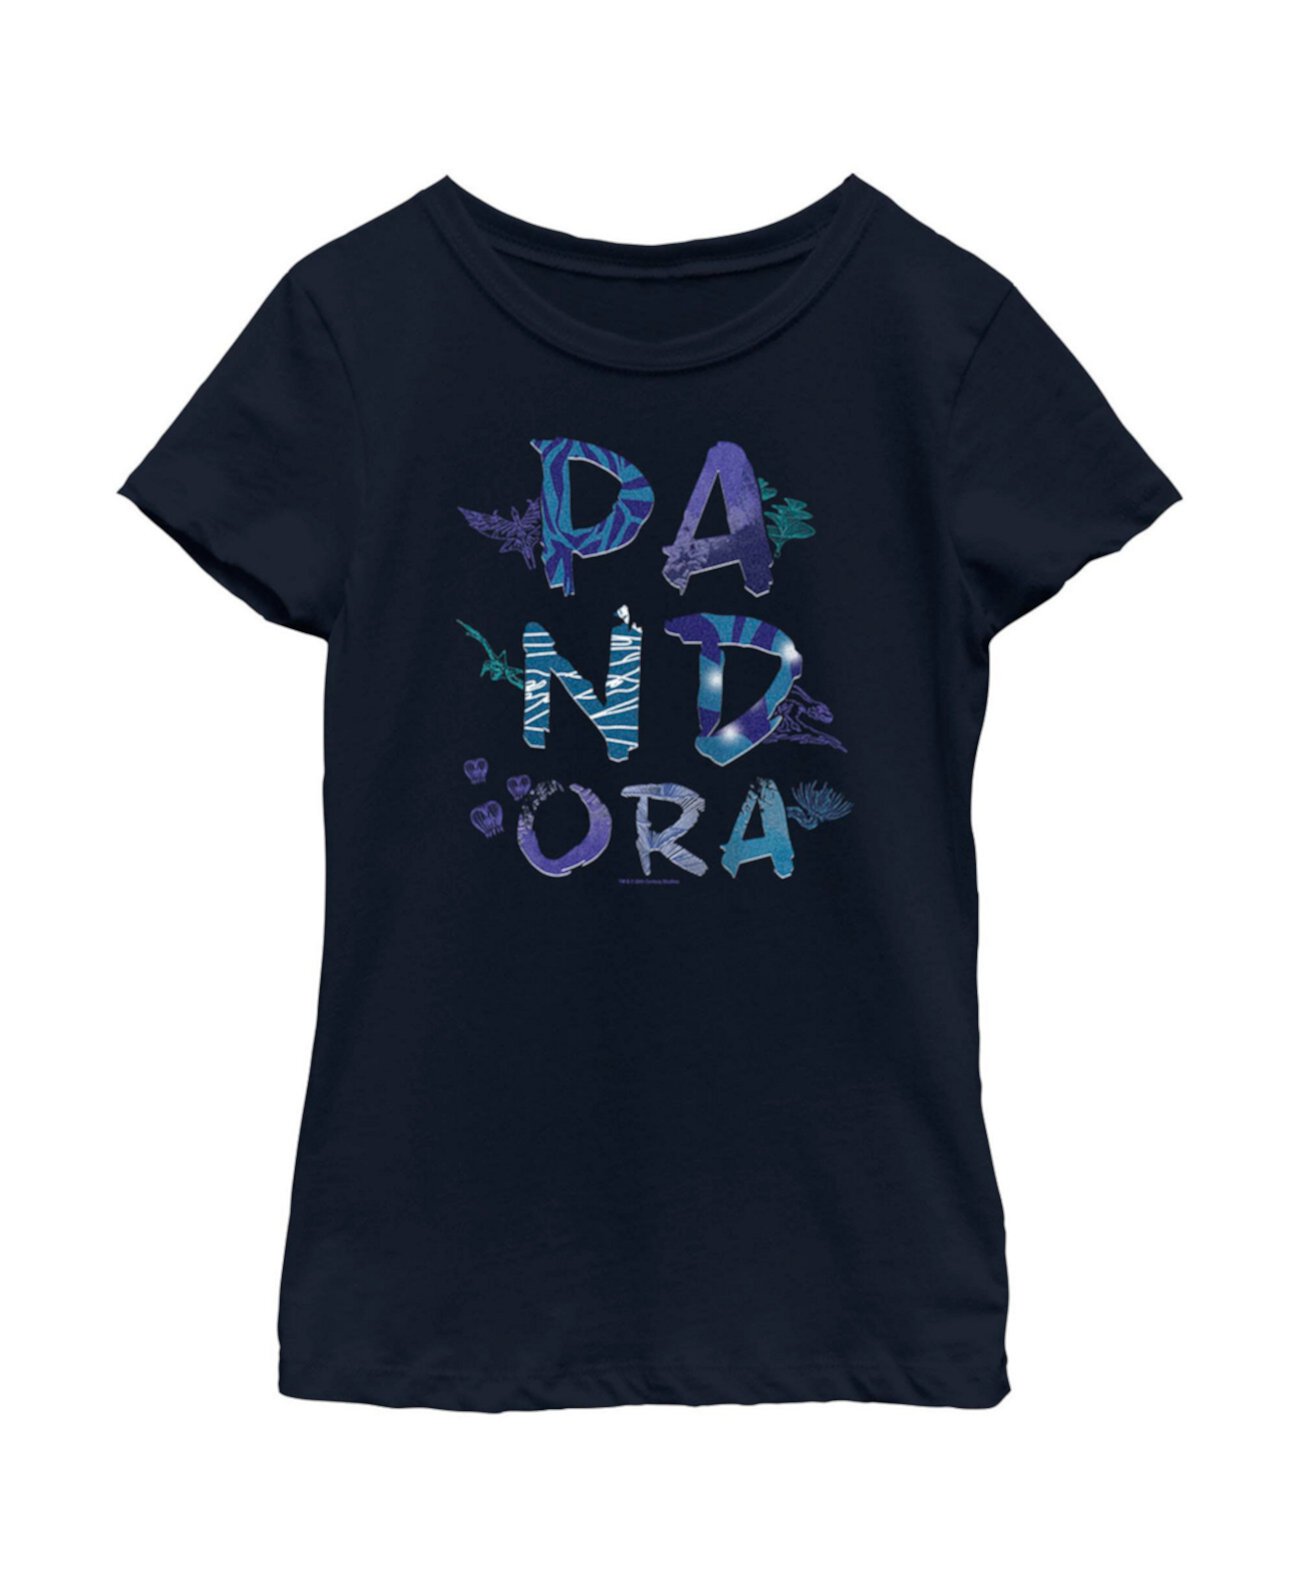 Детская футболка с логотипом Pandora Flora and Fauna для девочек Avatar 20th Century Fox